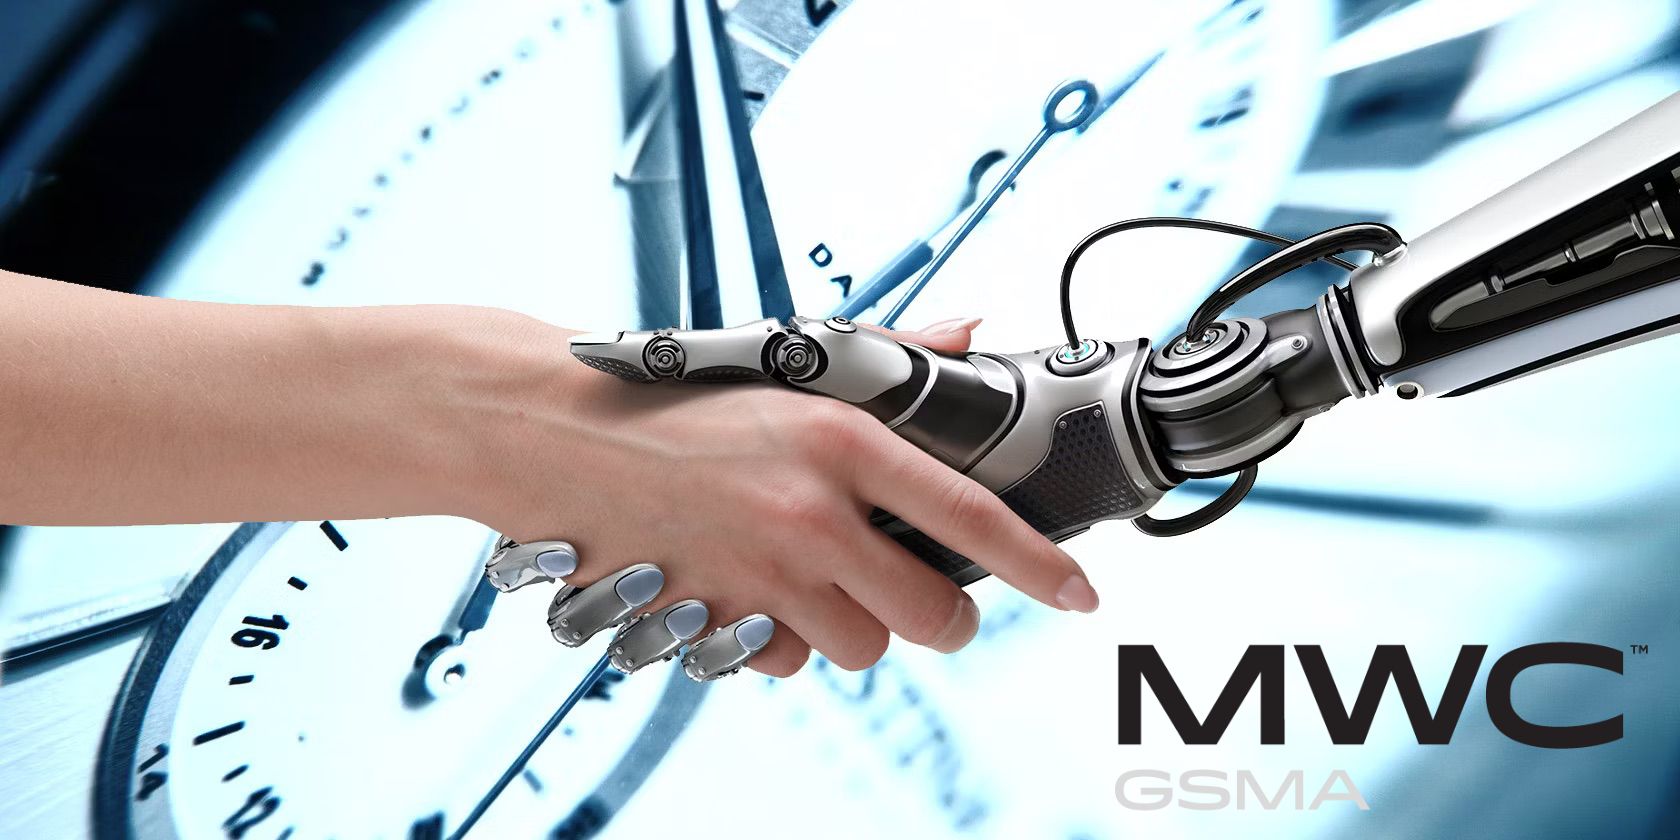 Main humaine tenant la main du robot avec le logo MWC dans le coin inférieur droit